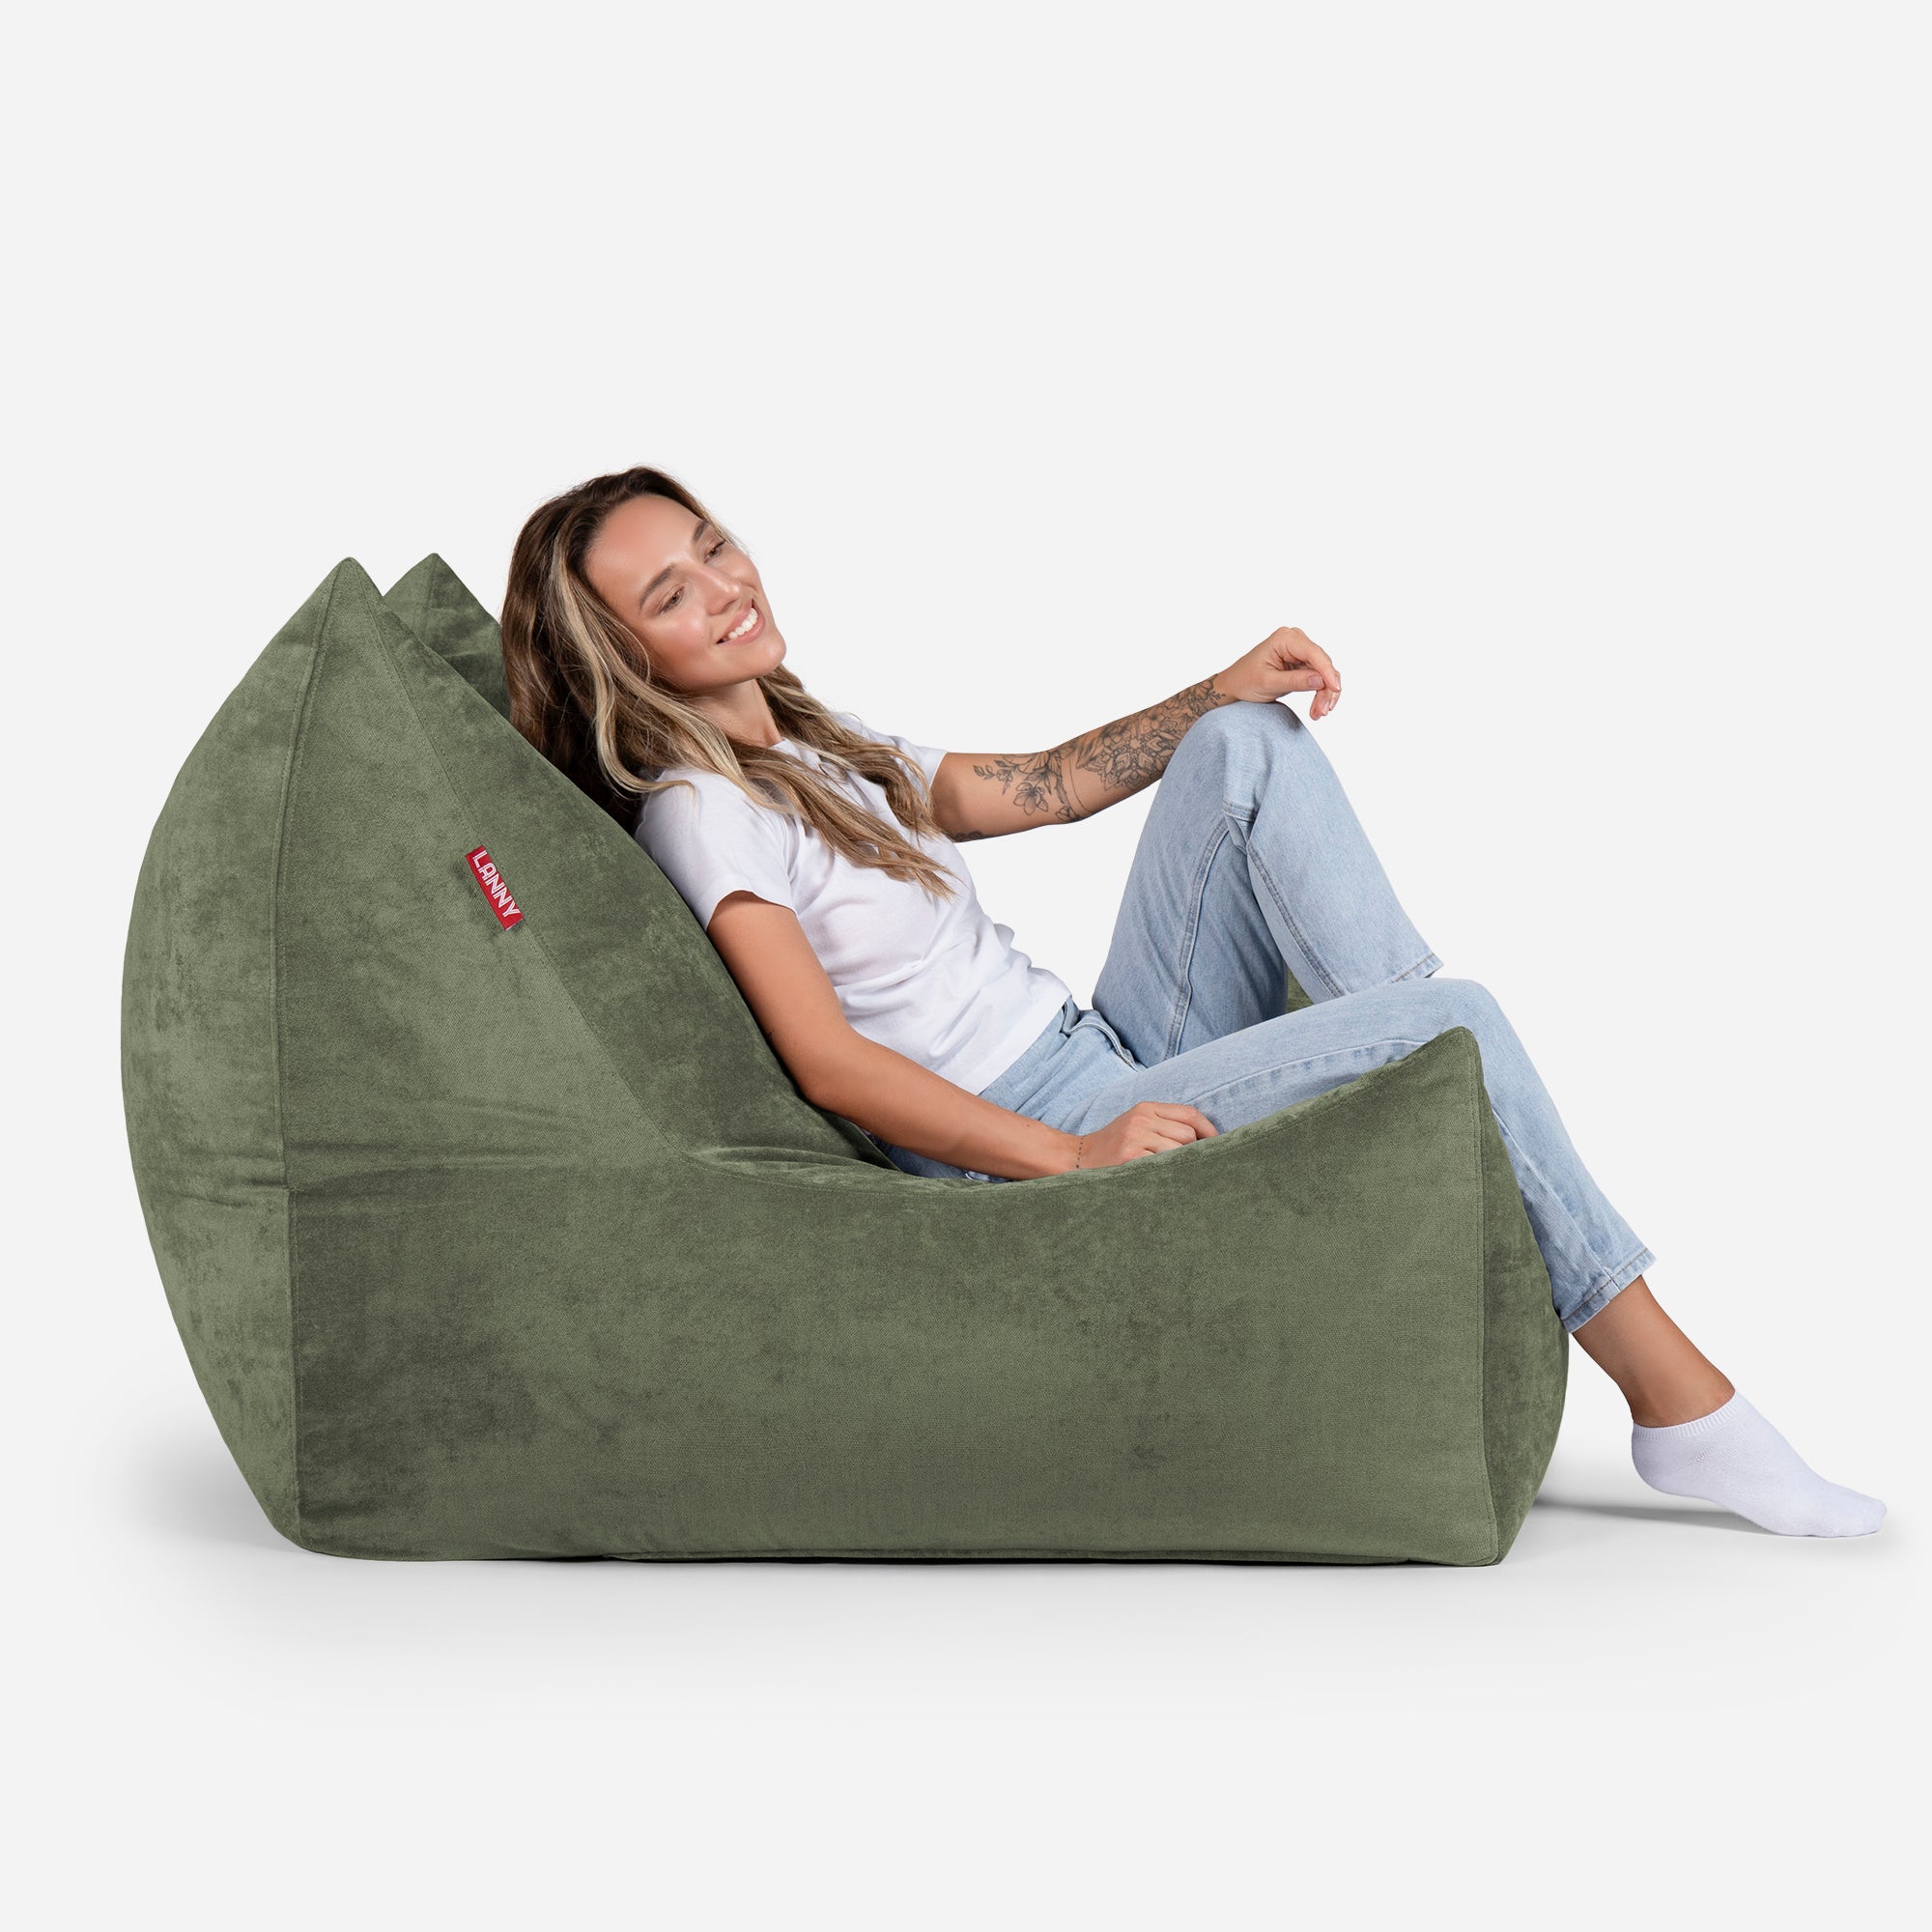 Quadro Aldo Khaki Bean bag Chair